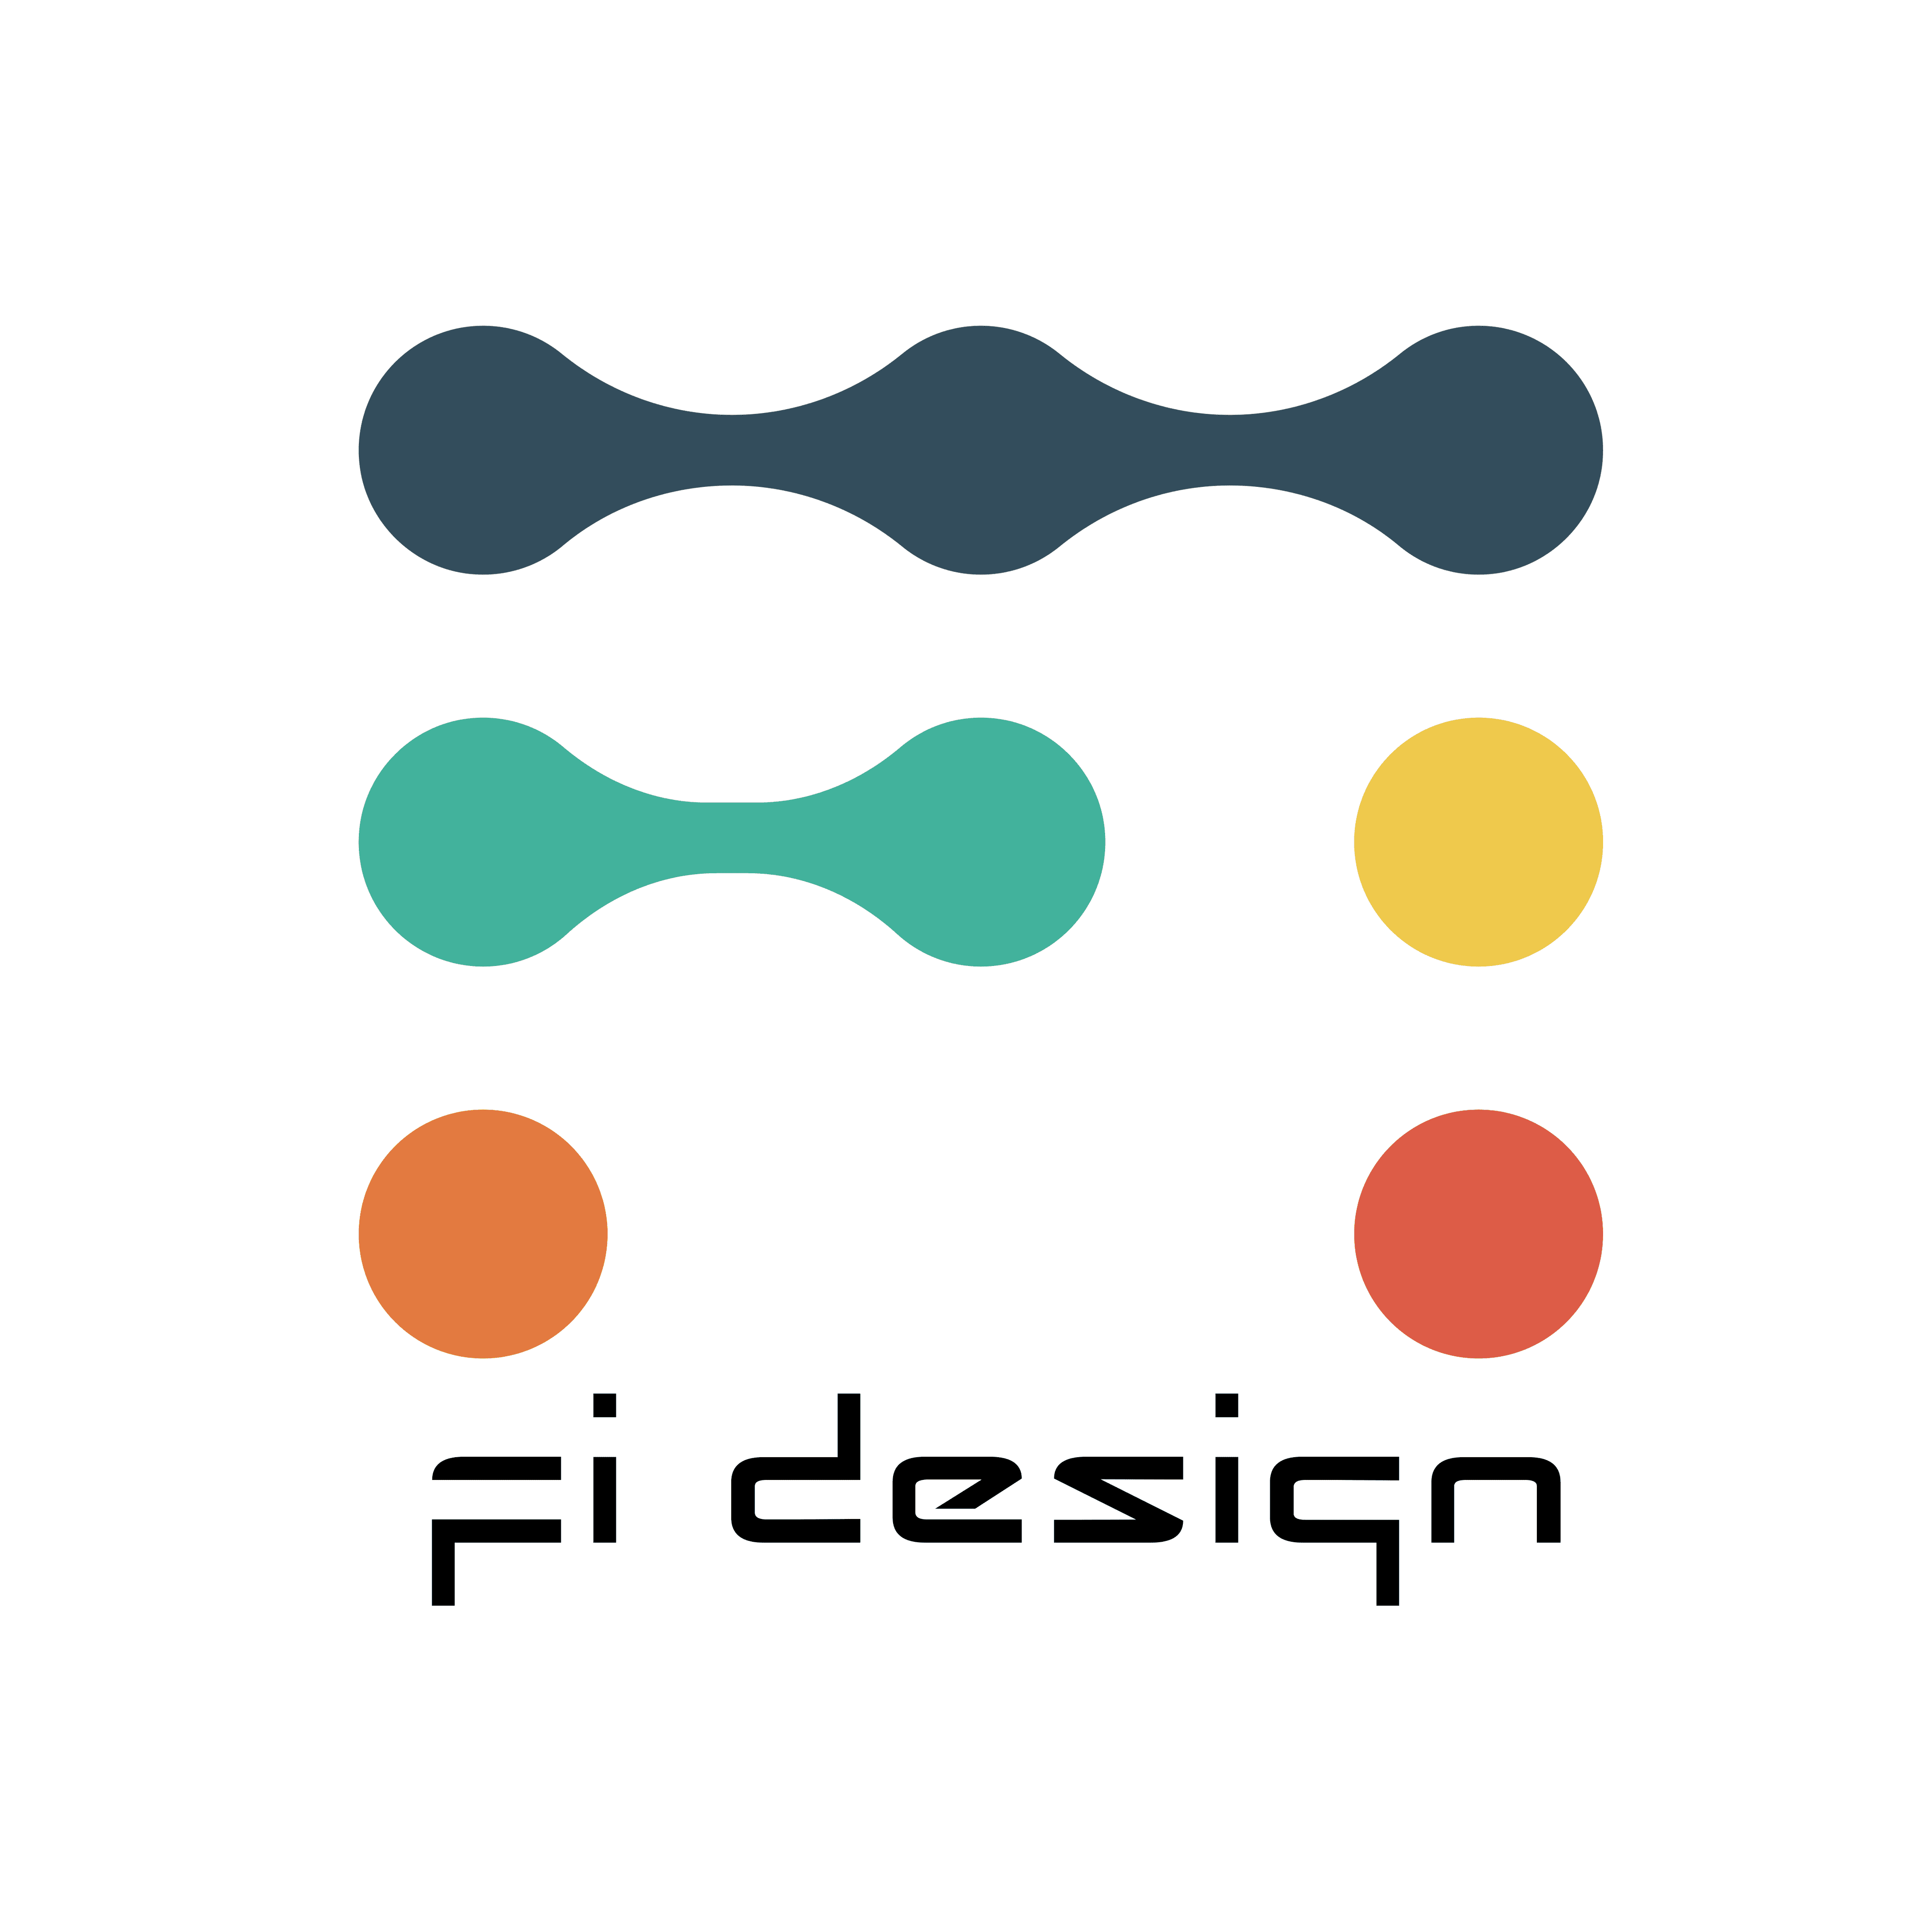 Fidesign banner